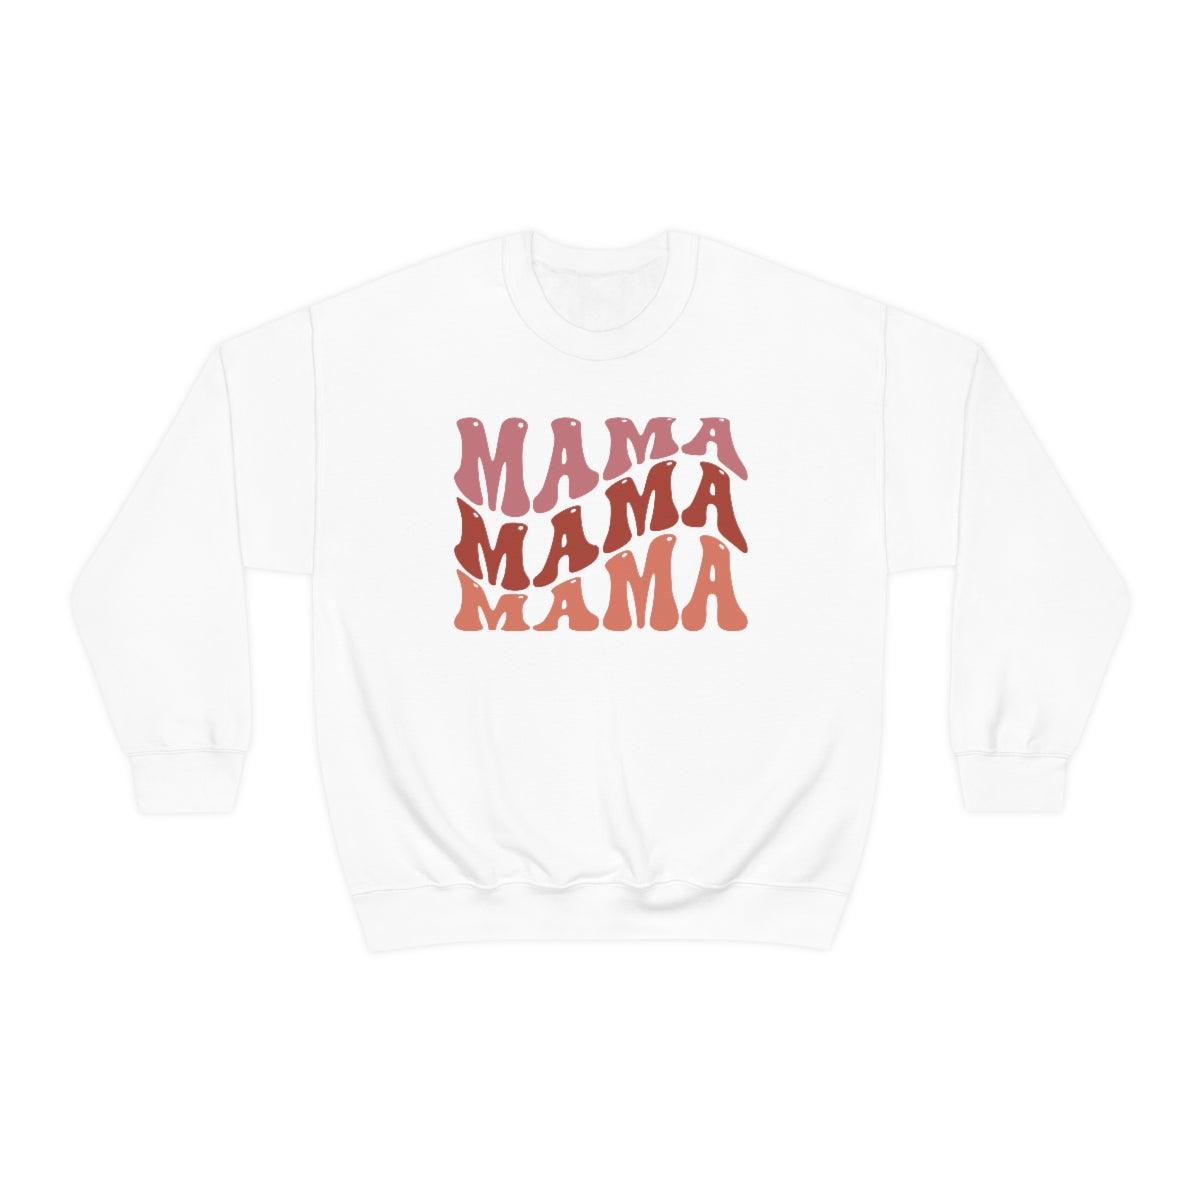 Retro Mama Crewneck Sweatshirt - Crystal Rose Design Co.